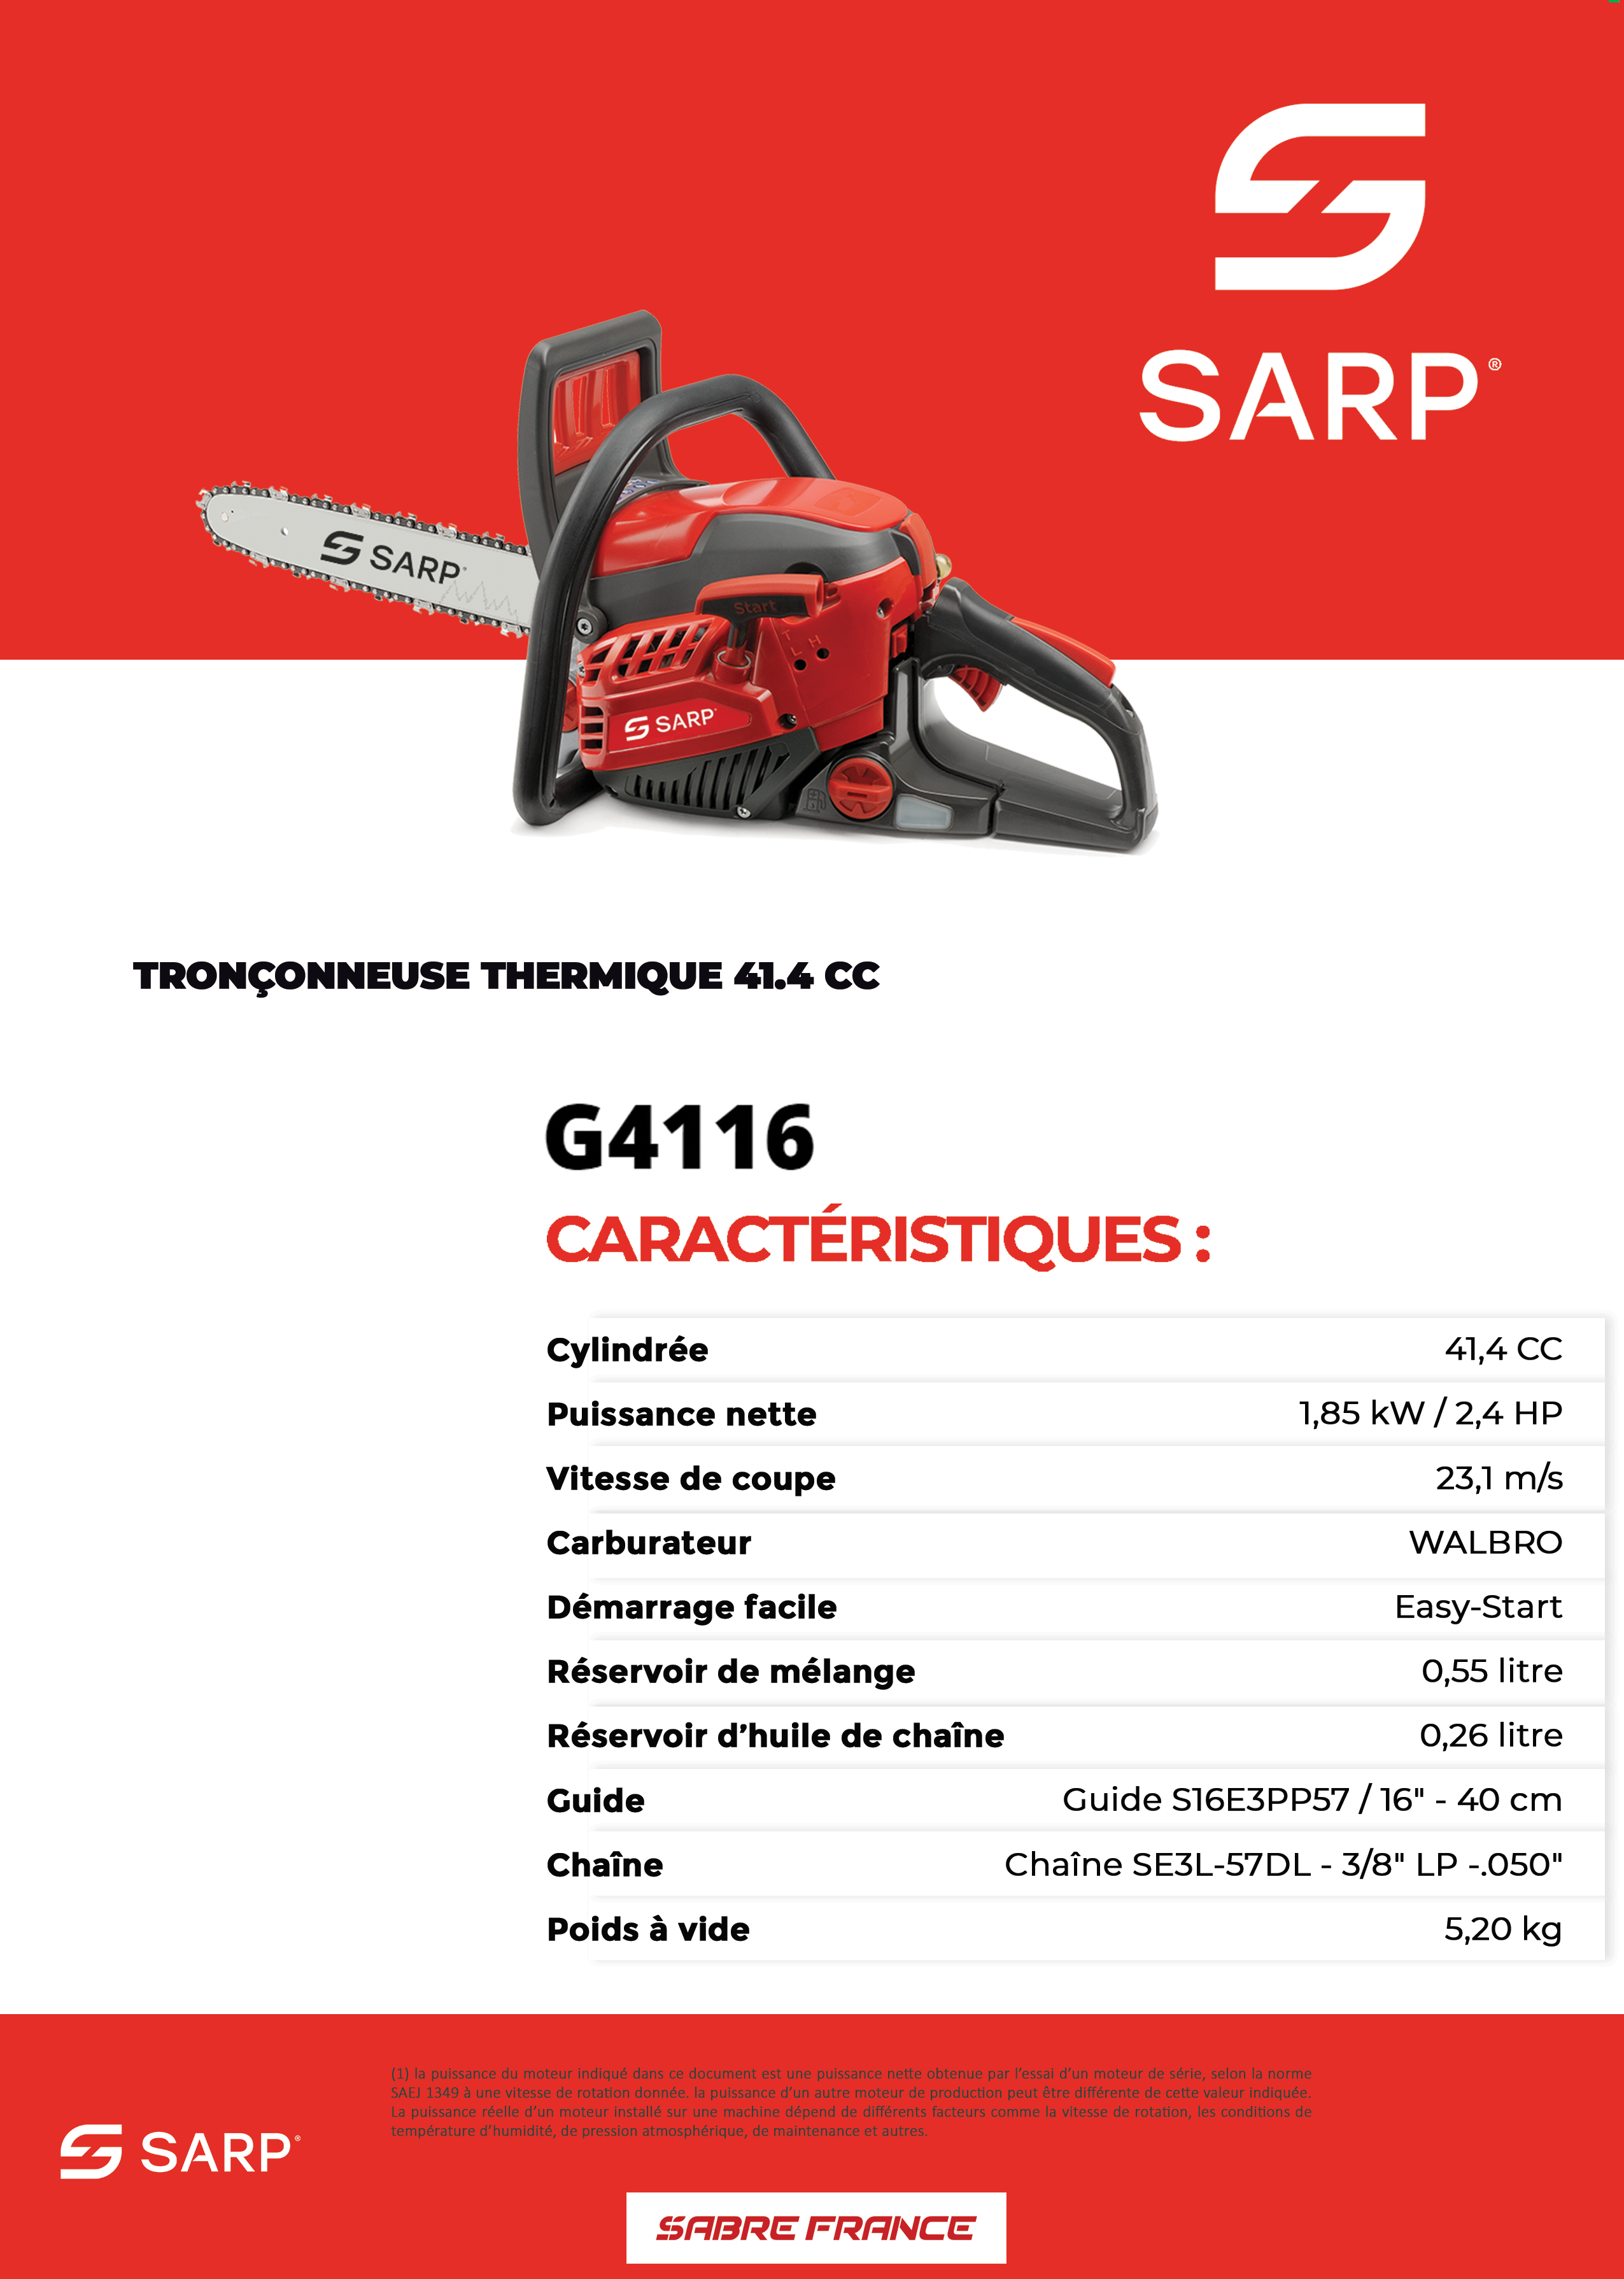 Tronçonneuse thermique G4116 - Sarp